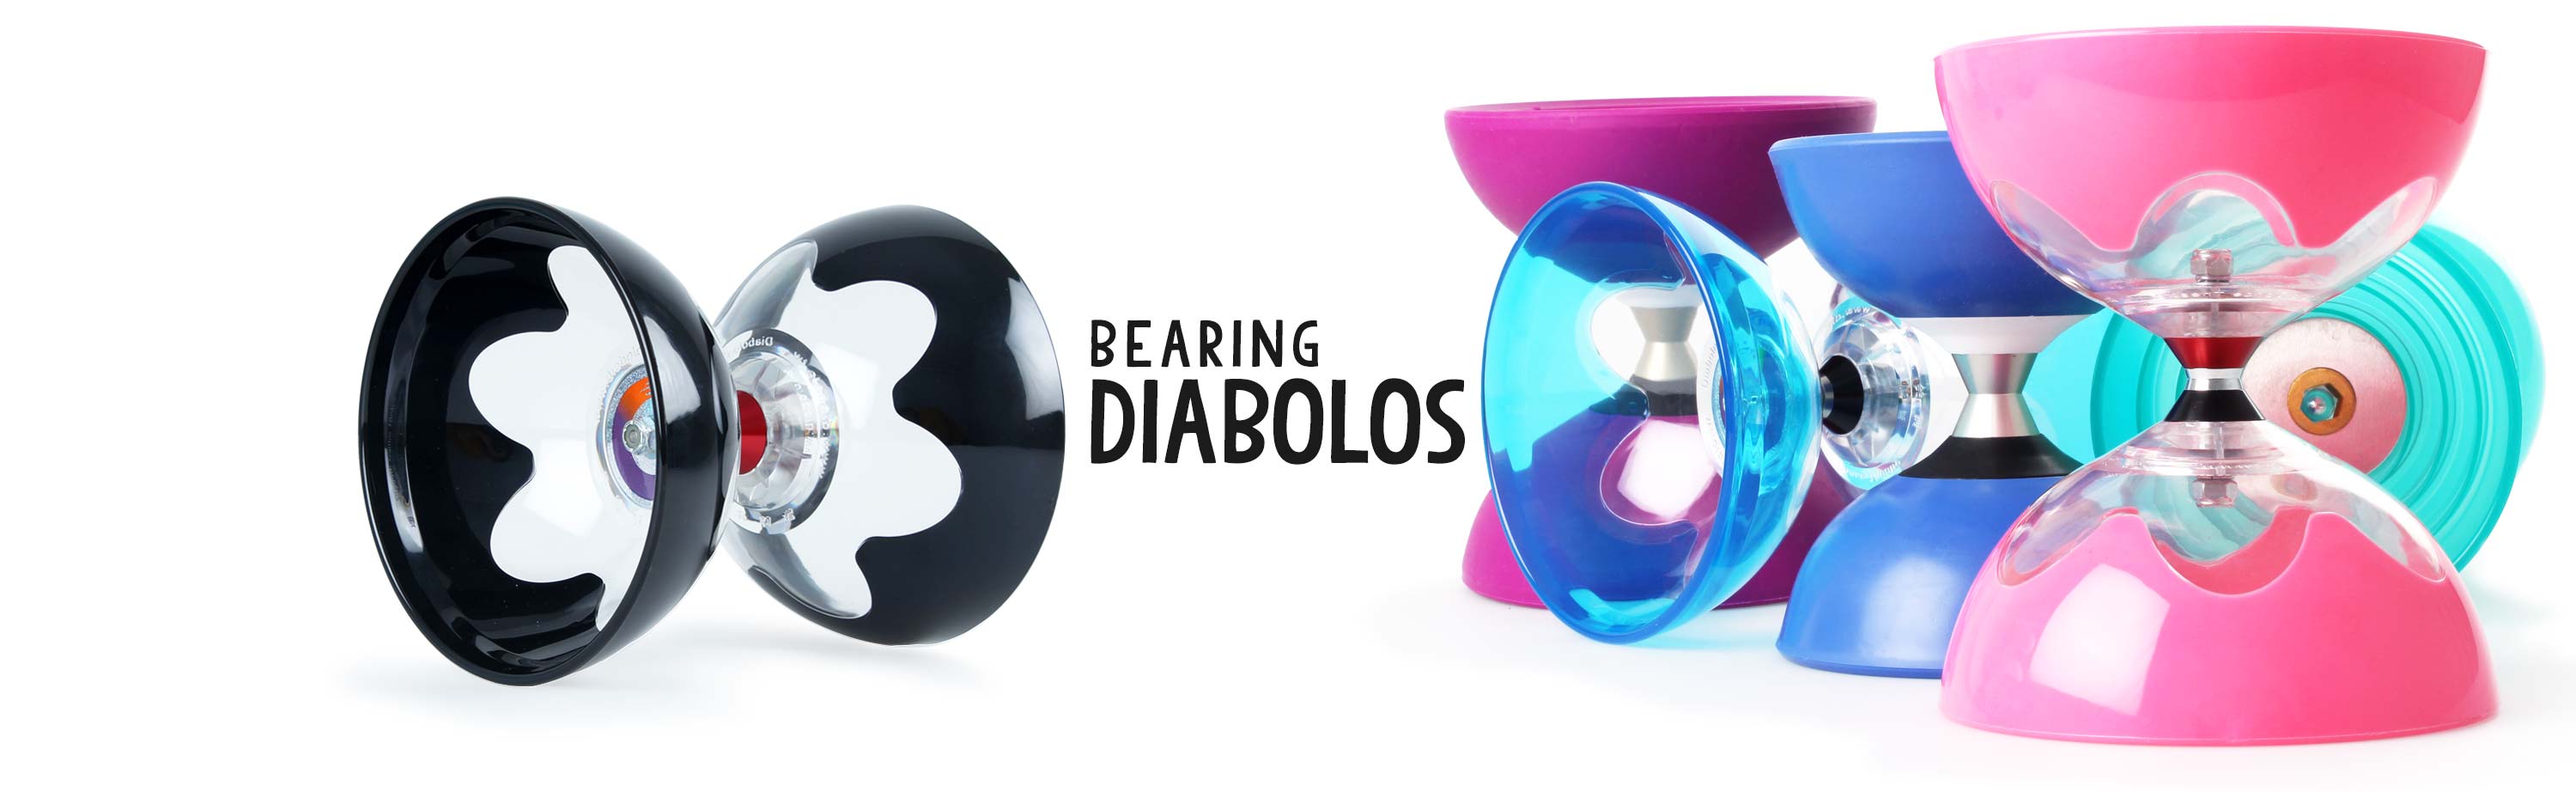 Bag Diablo Handsticks Not Incl QUARTZ 2 Triple Bearing Diabolo Pro Diabolos 